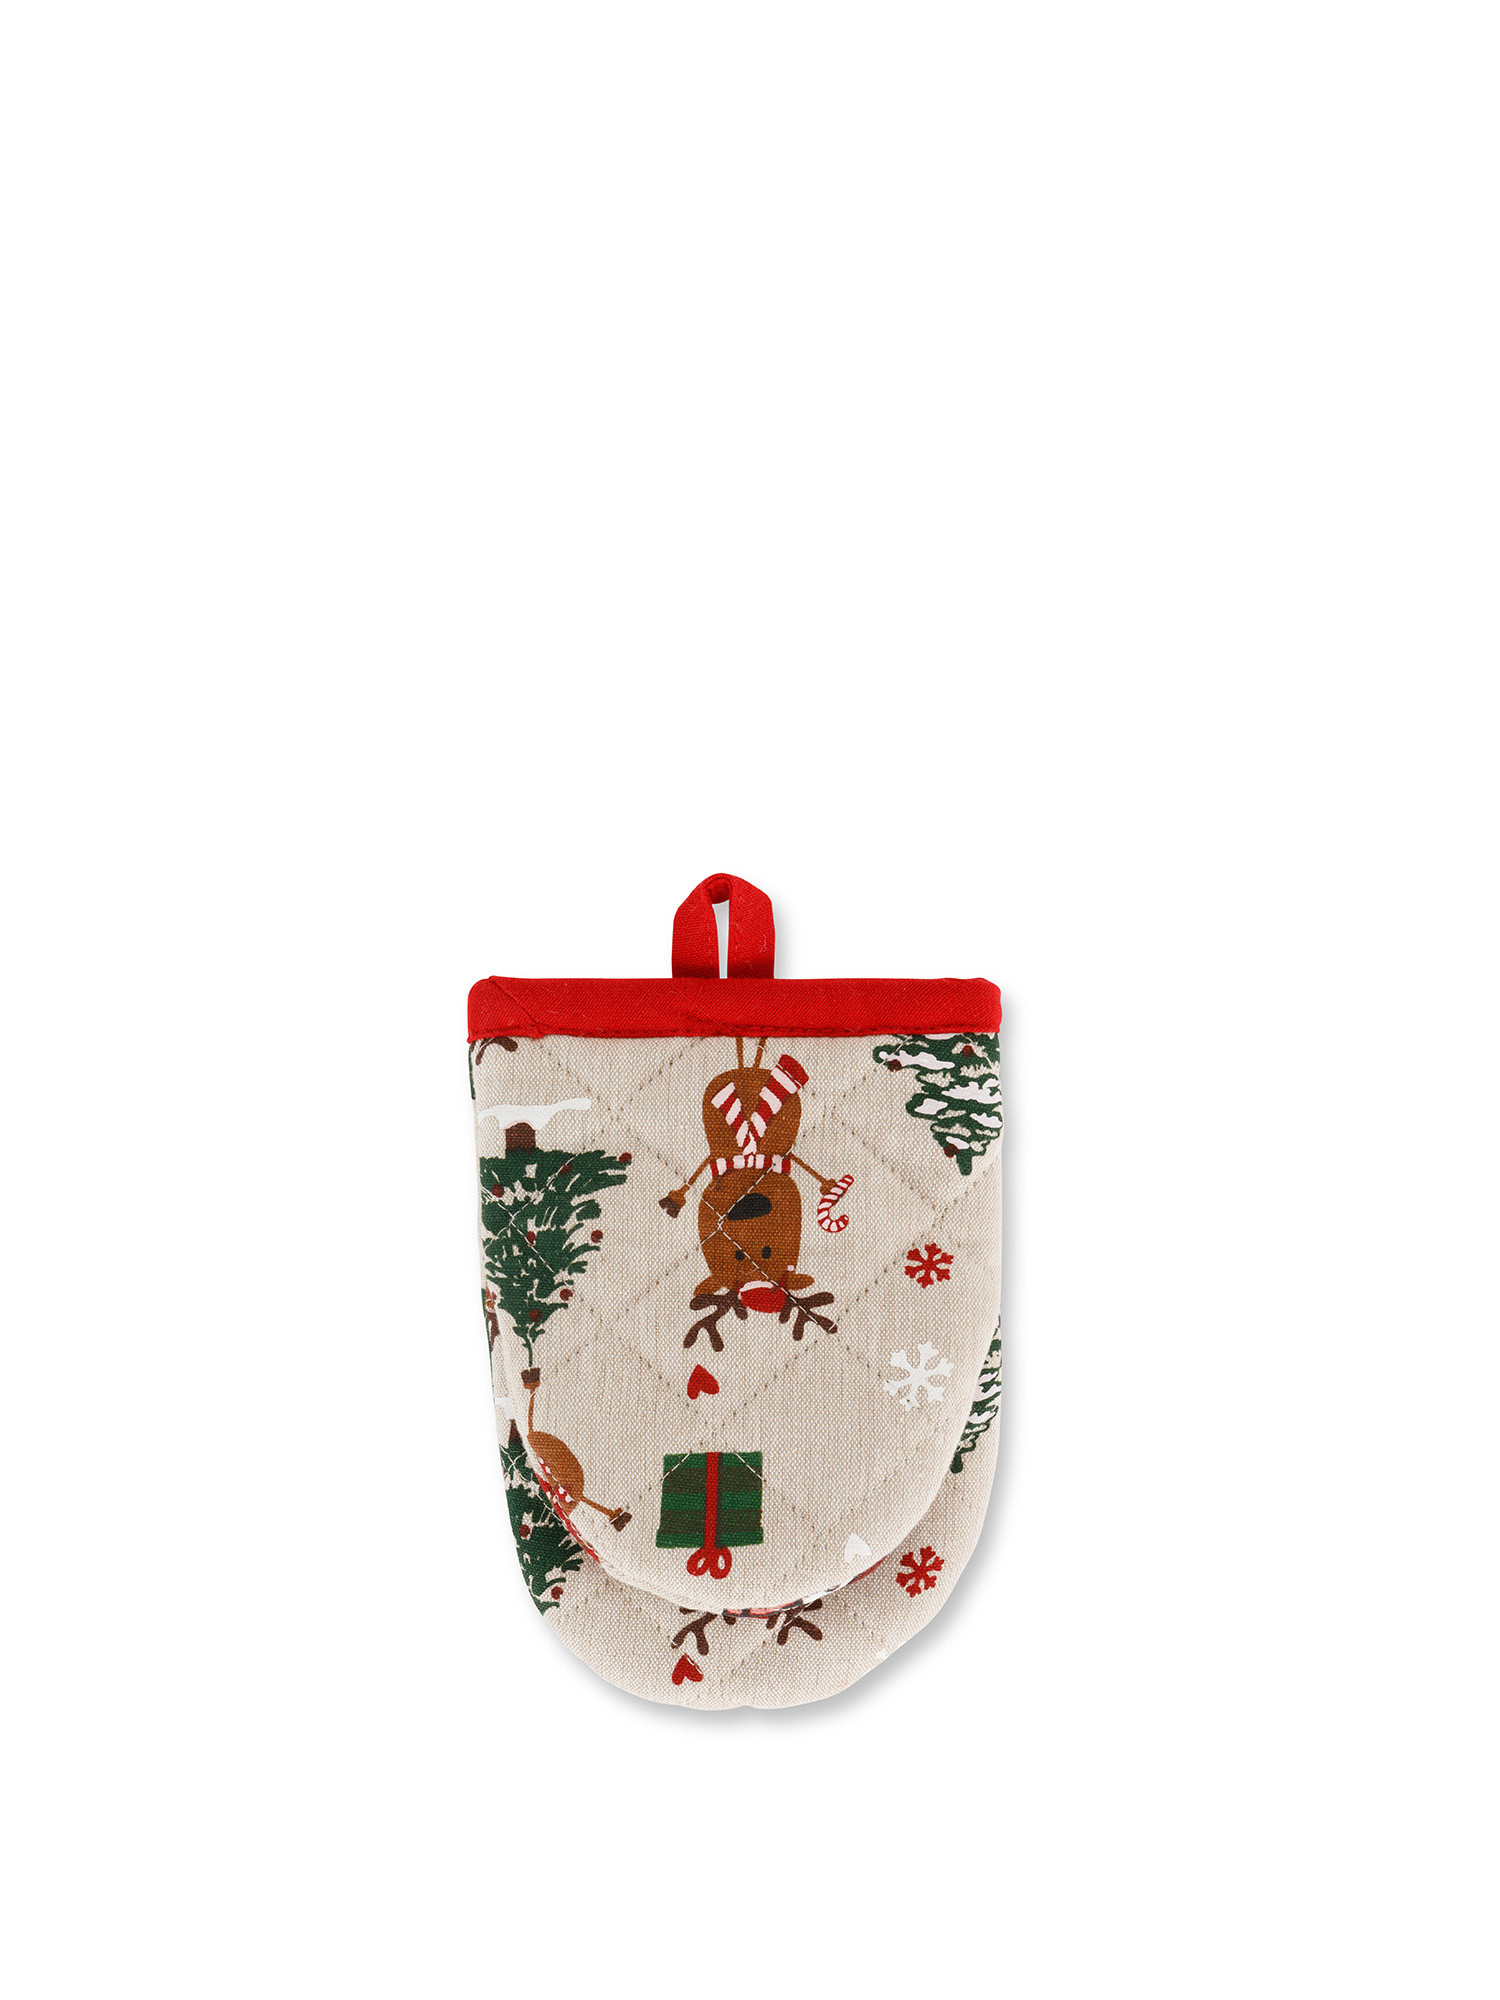 Guanto piccolo da cucina panama di cotone stampa natalizia, Beige, large image number 0